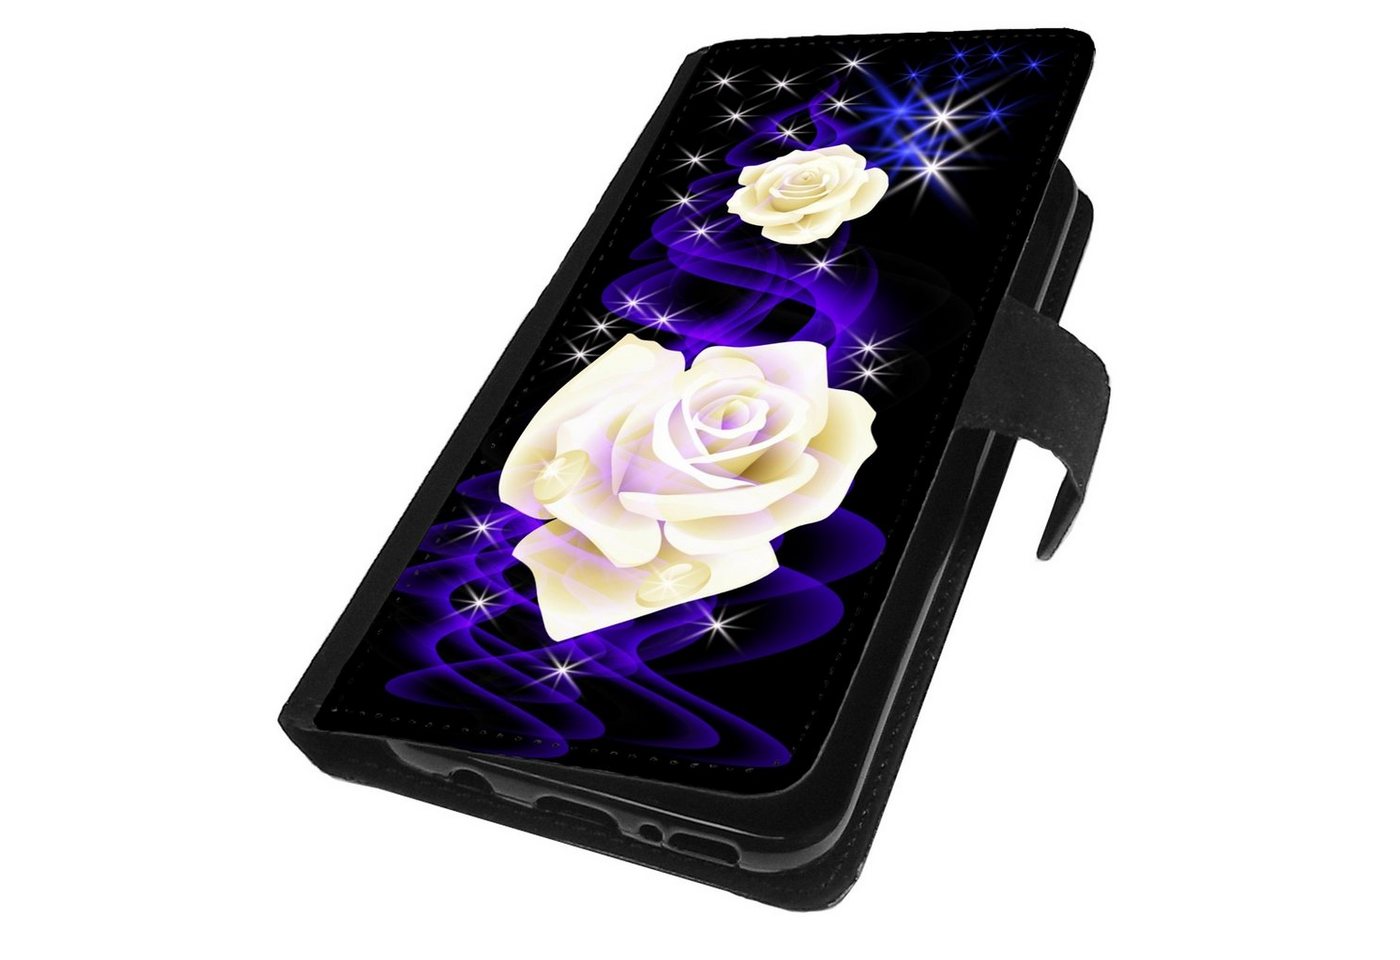 Traumhuelle Handyhülle MOTIV 298 weiße Rose Hülle für iPhone Xiaomi Google Huawei Motorola, Handy Tasche Schutz Etui Flip Case Klapp Hülle Cover Silikon von Traumhuelle